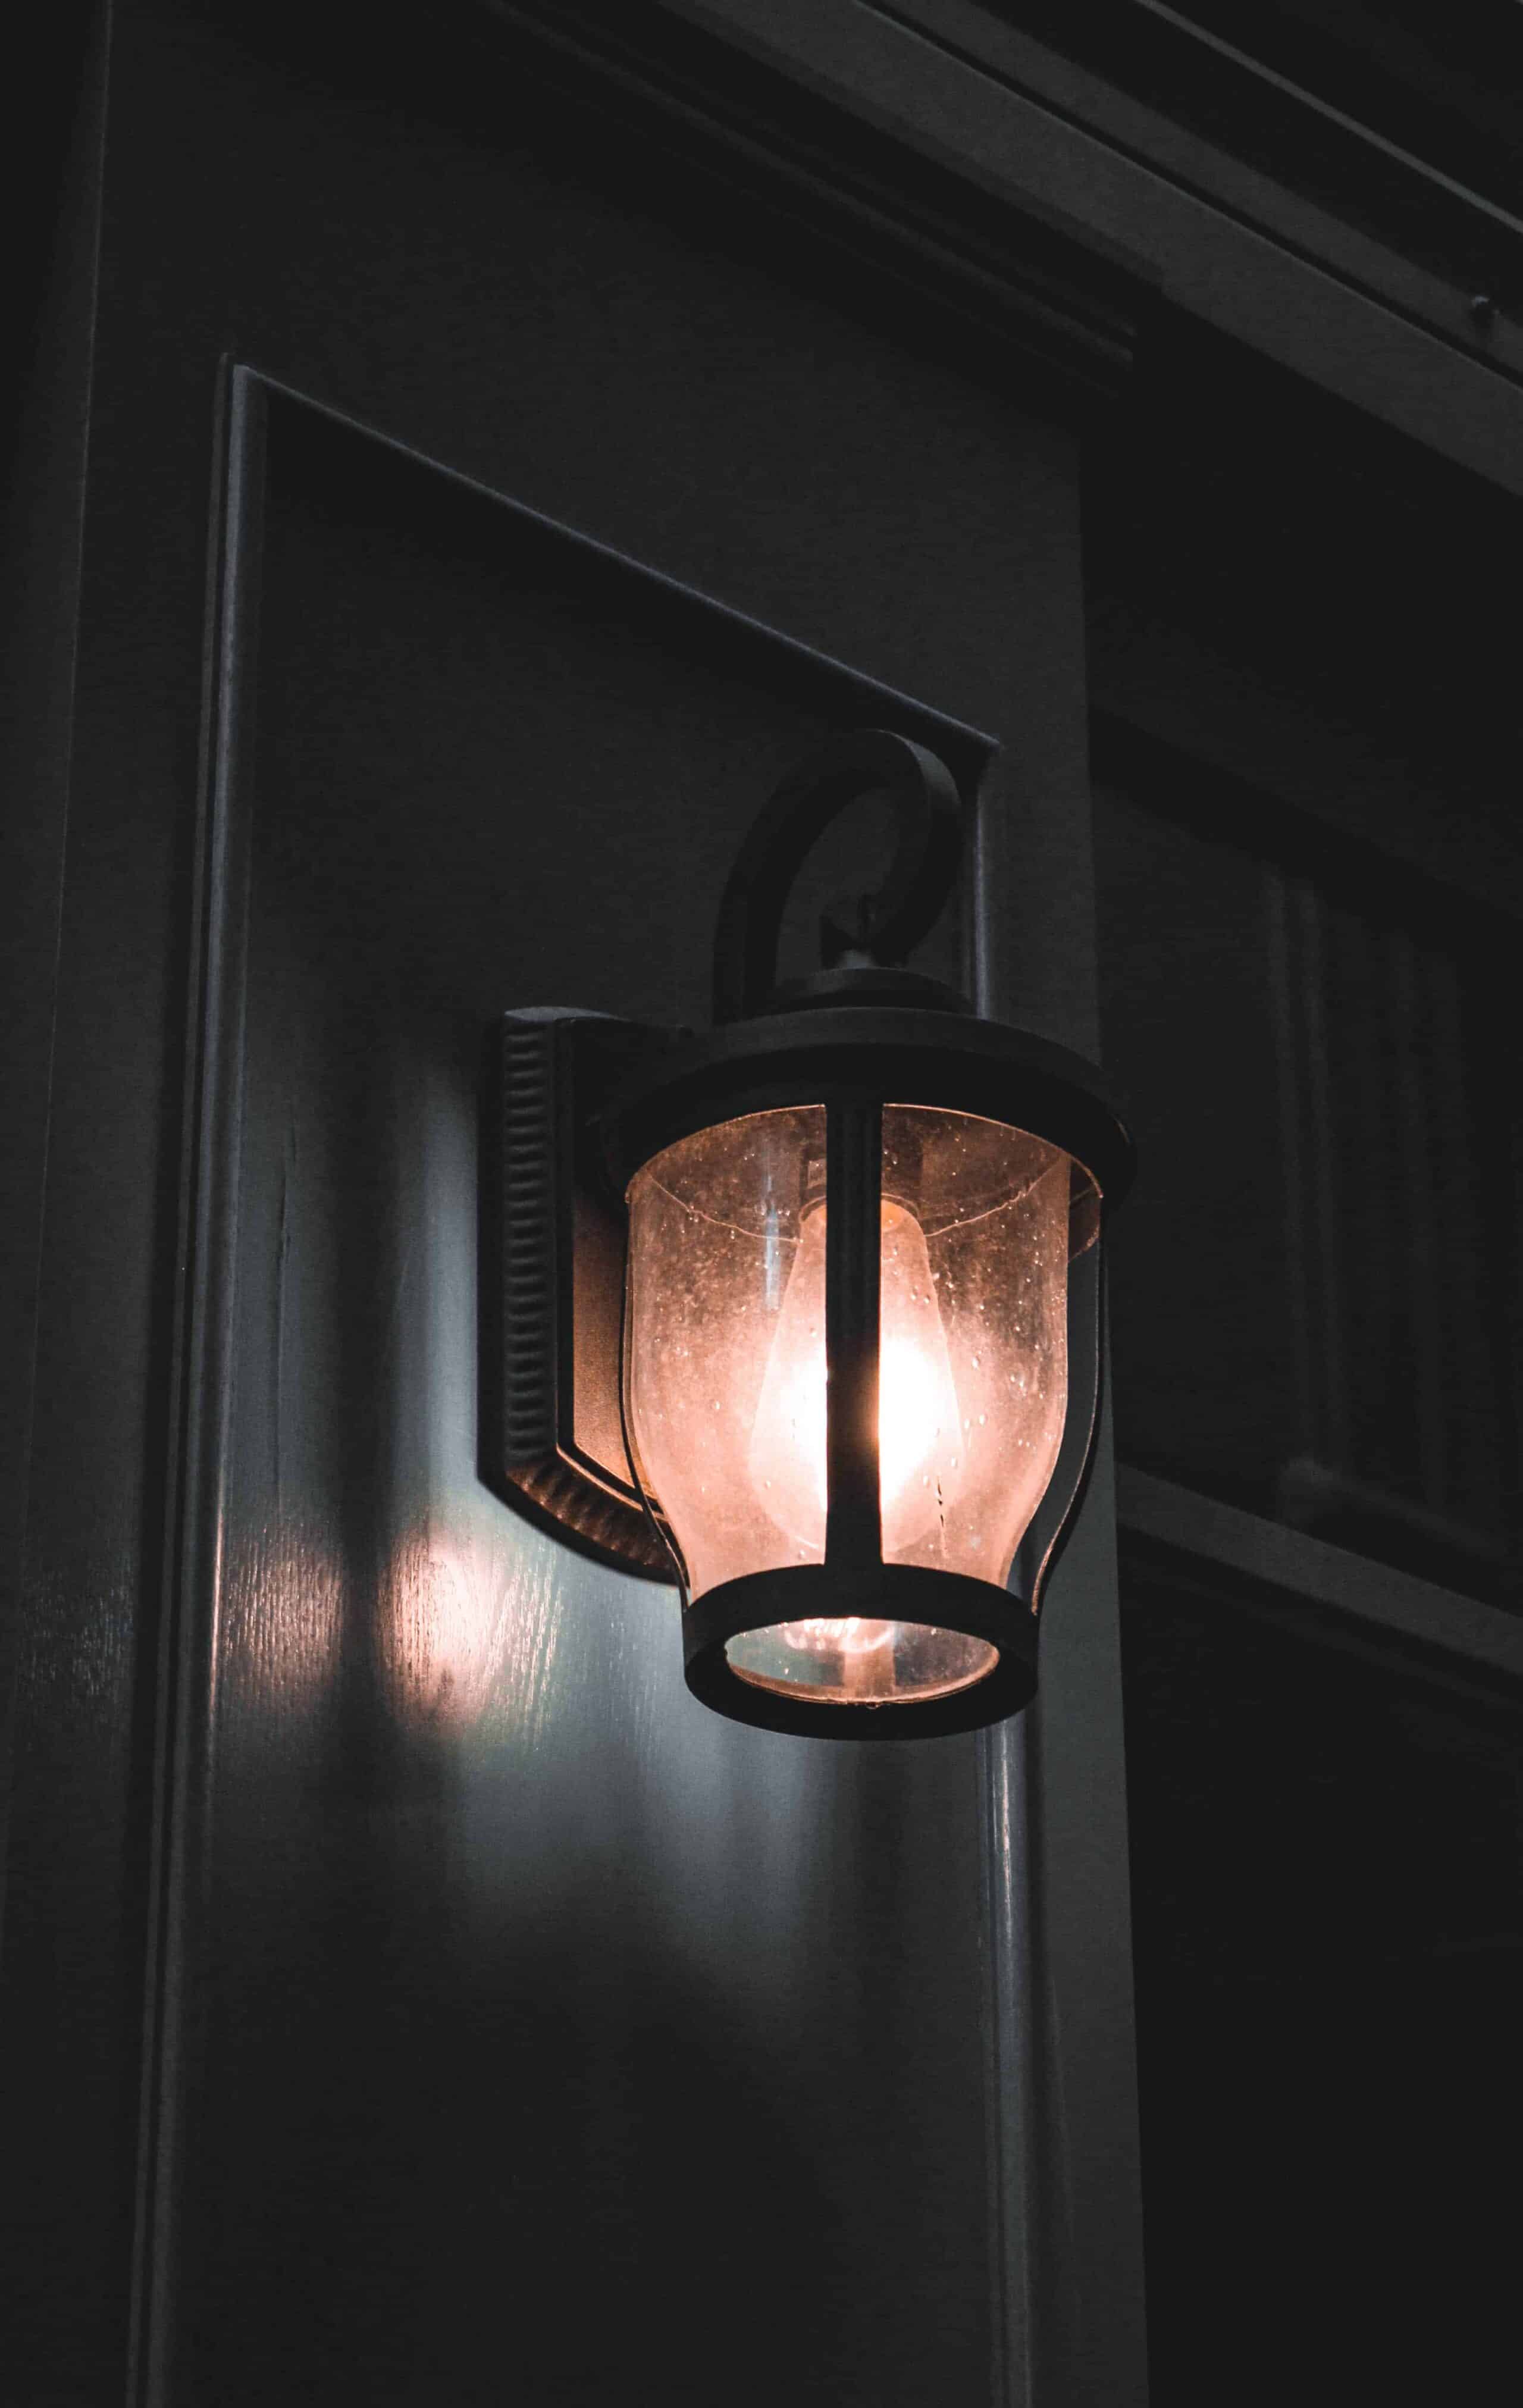 Type of outdoor lighting fixture